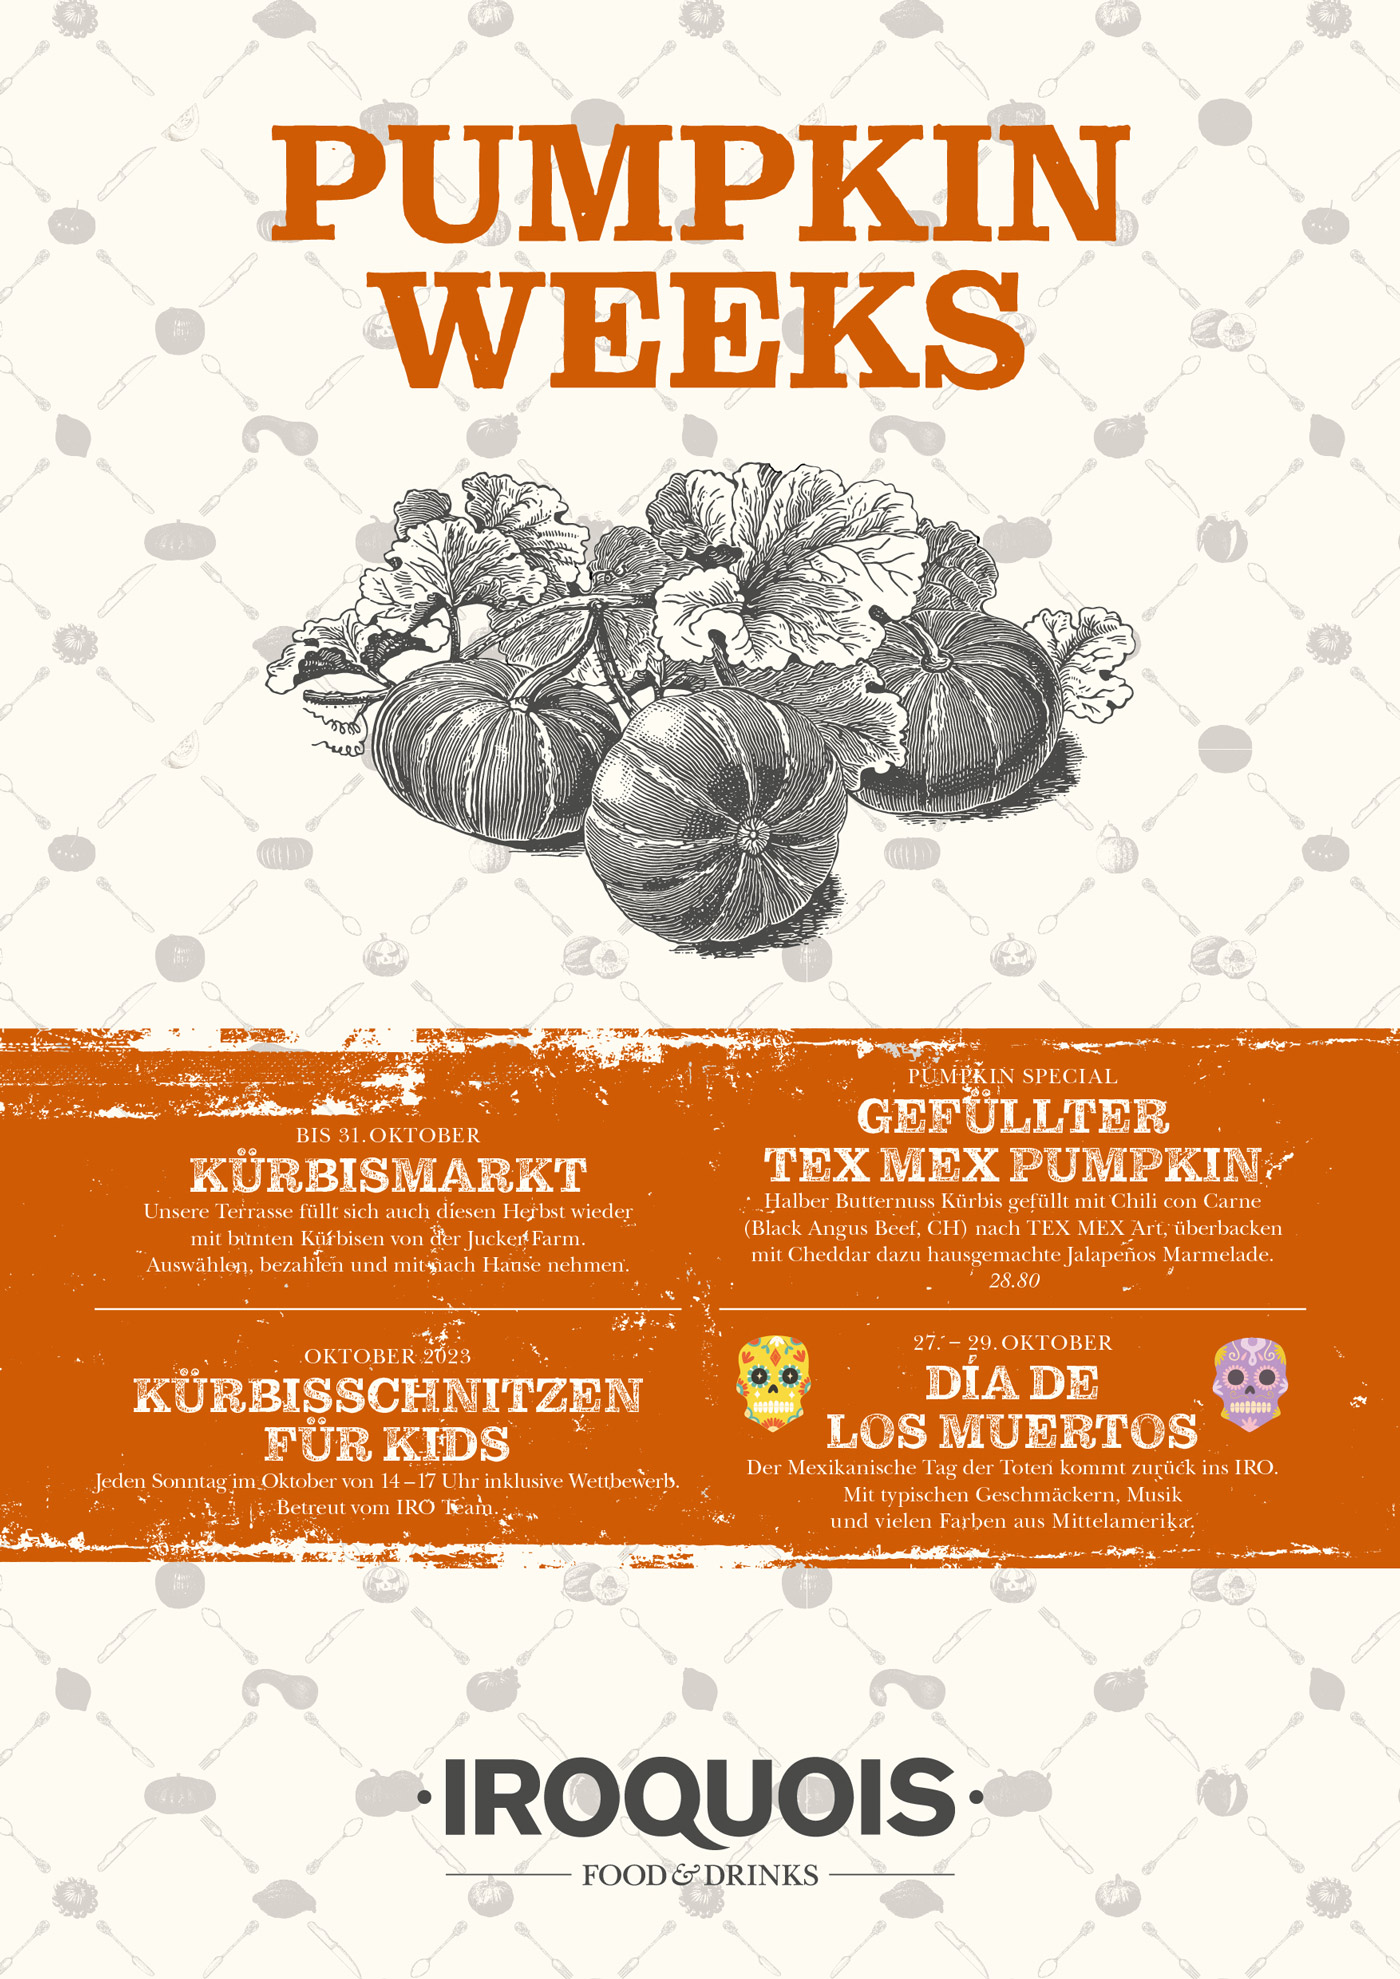 Pumpkin Weeks